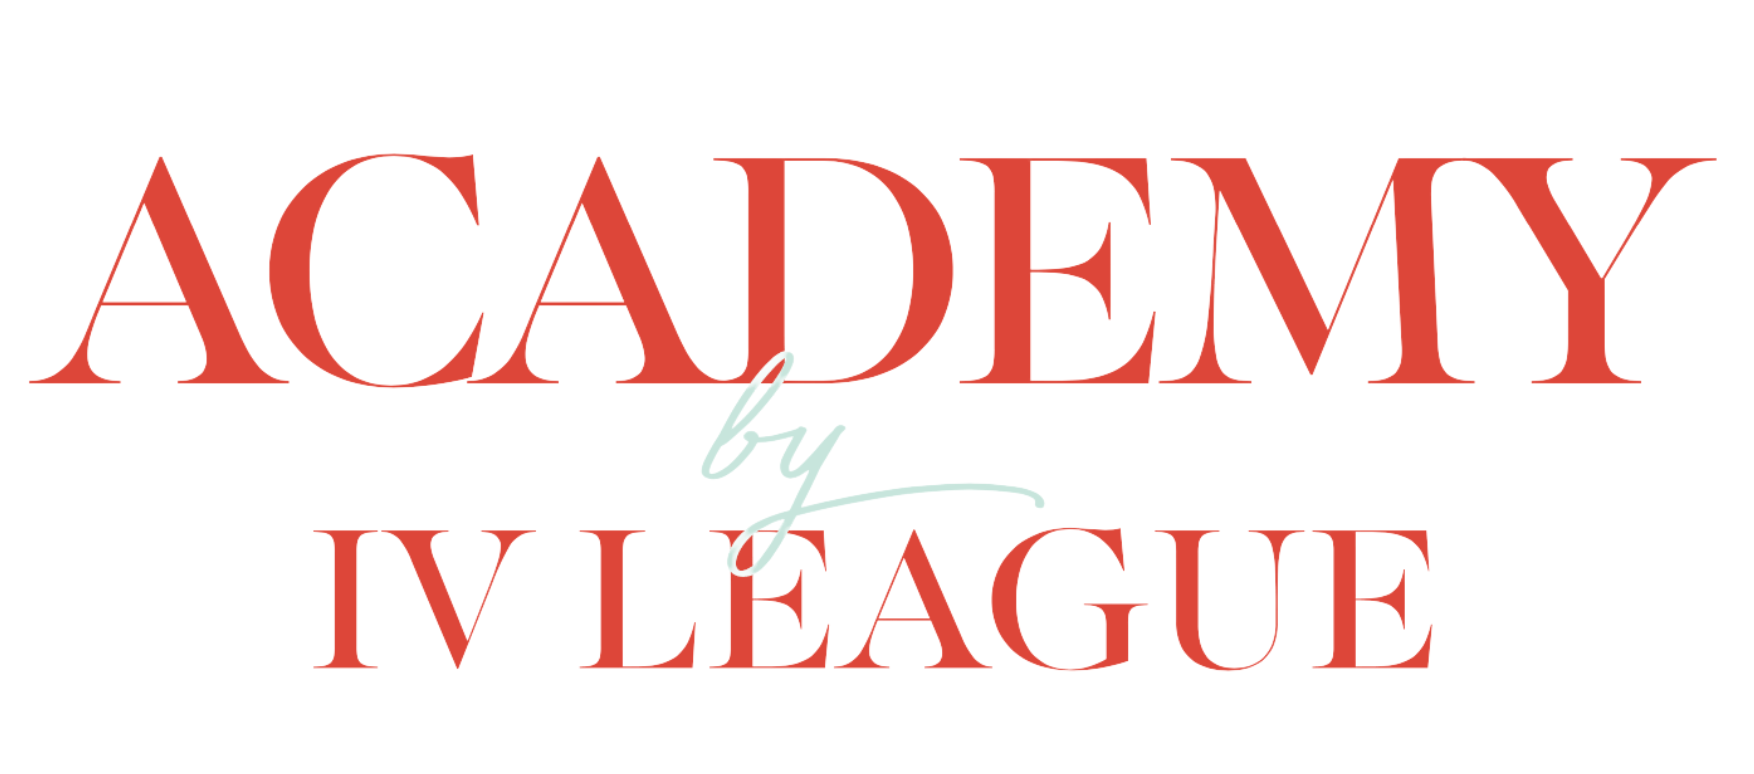 Academy By IV League